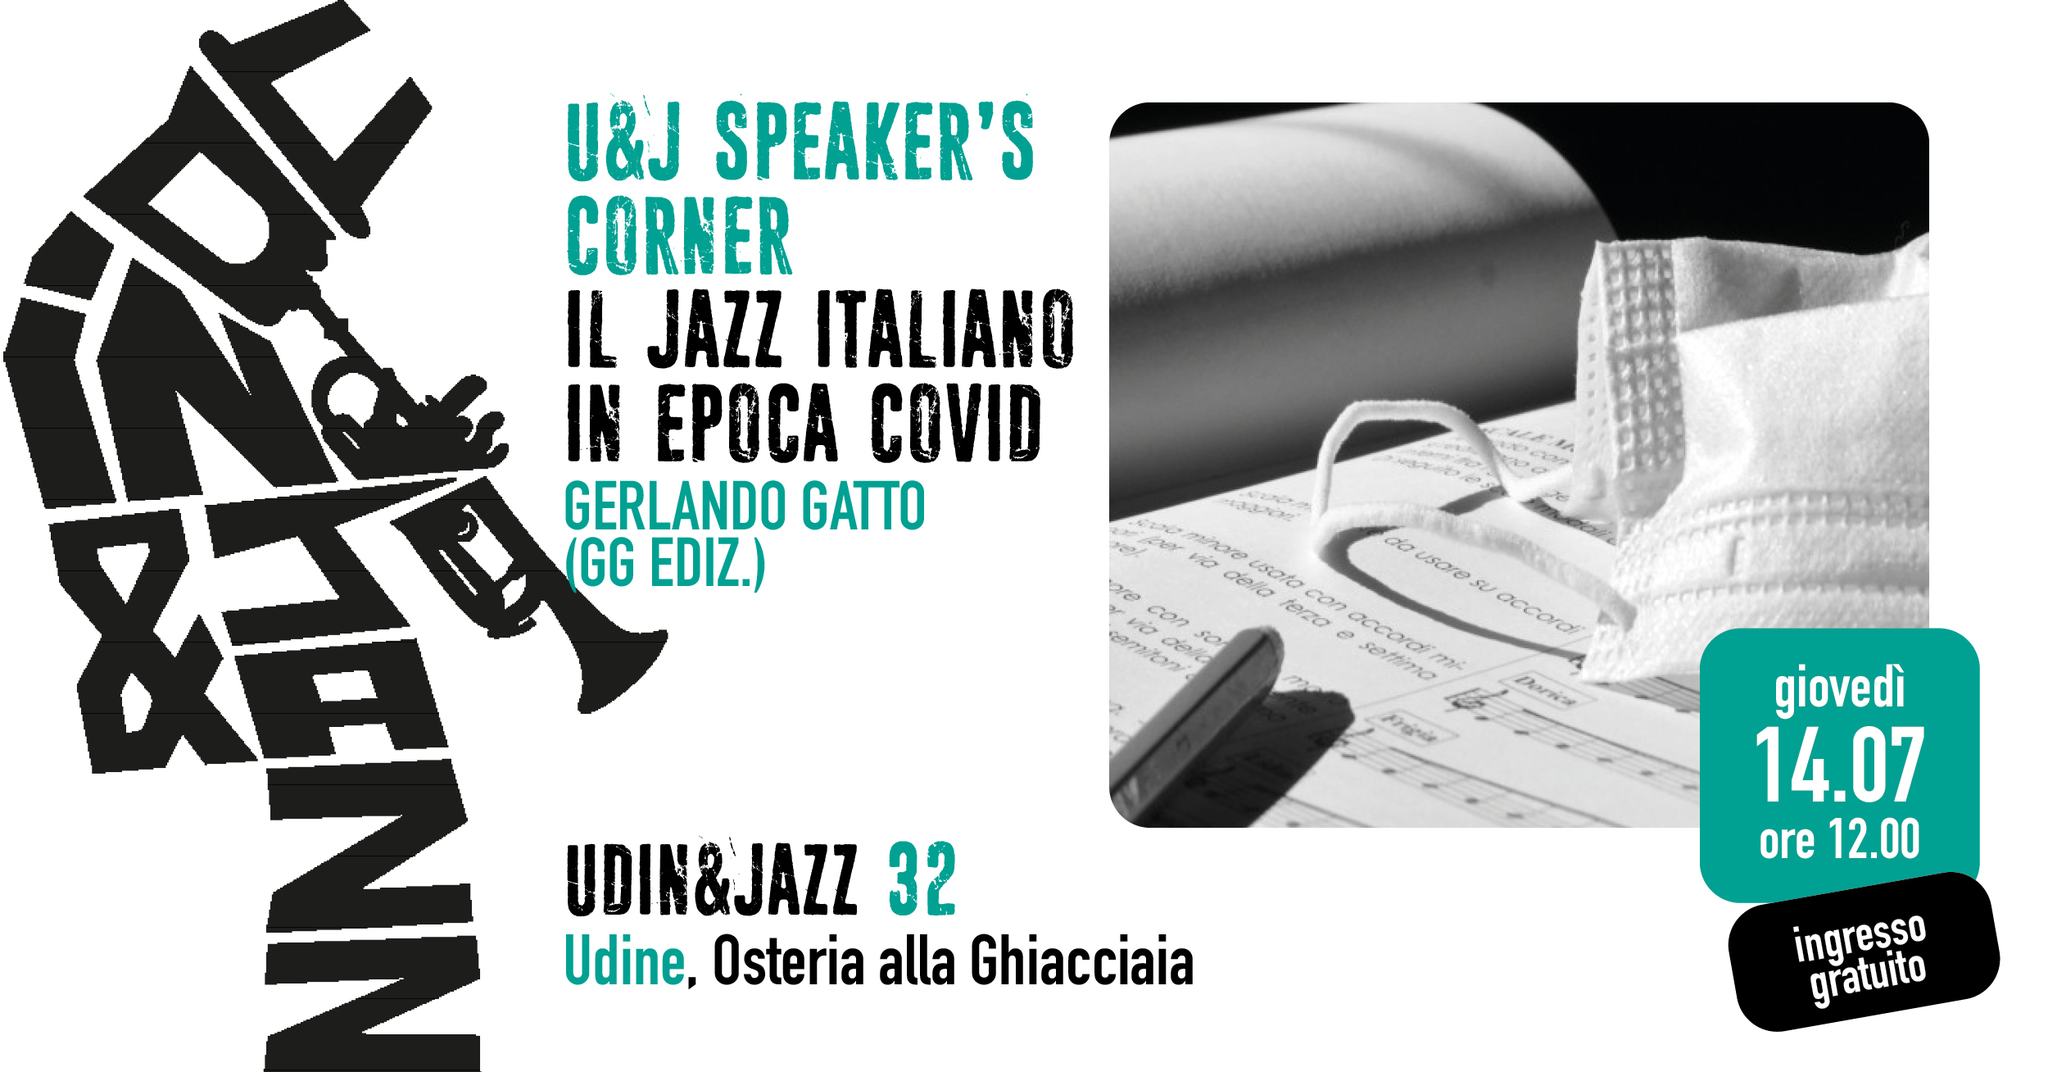 U&J Speaker’s Corner, Il jazz italiano in epoca covid di Gerlando Gatto, Udin&Jazz, Udine